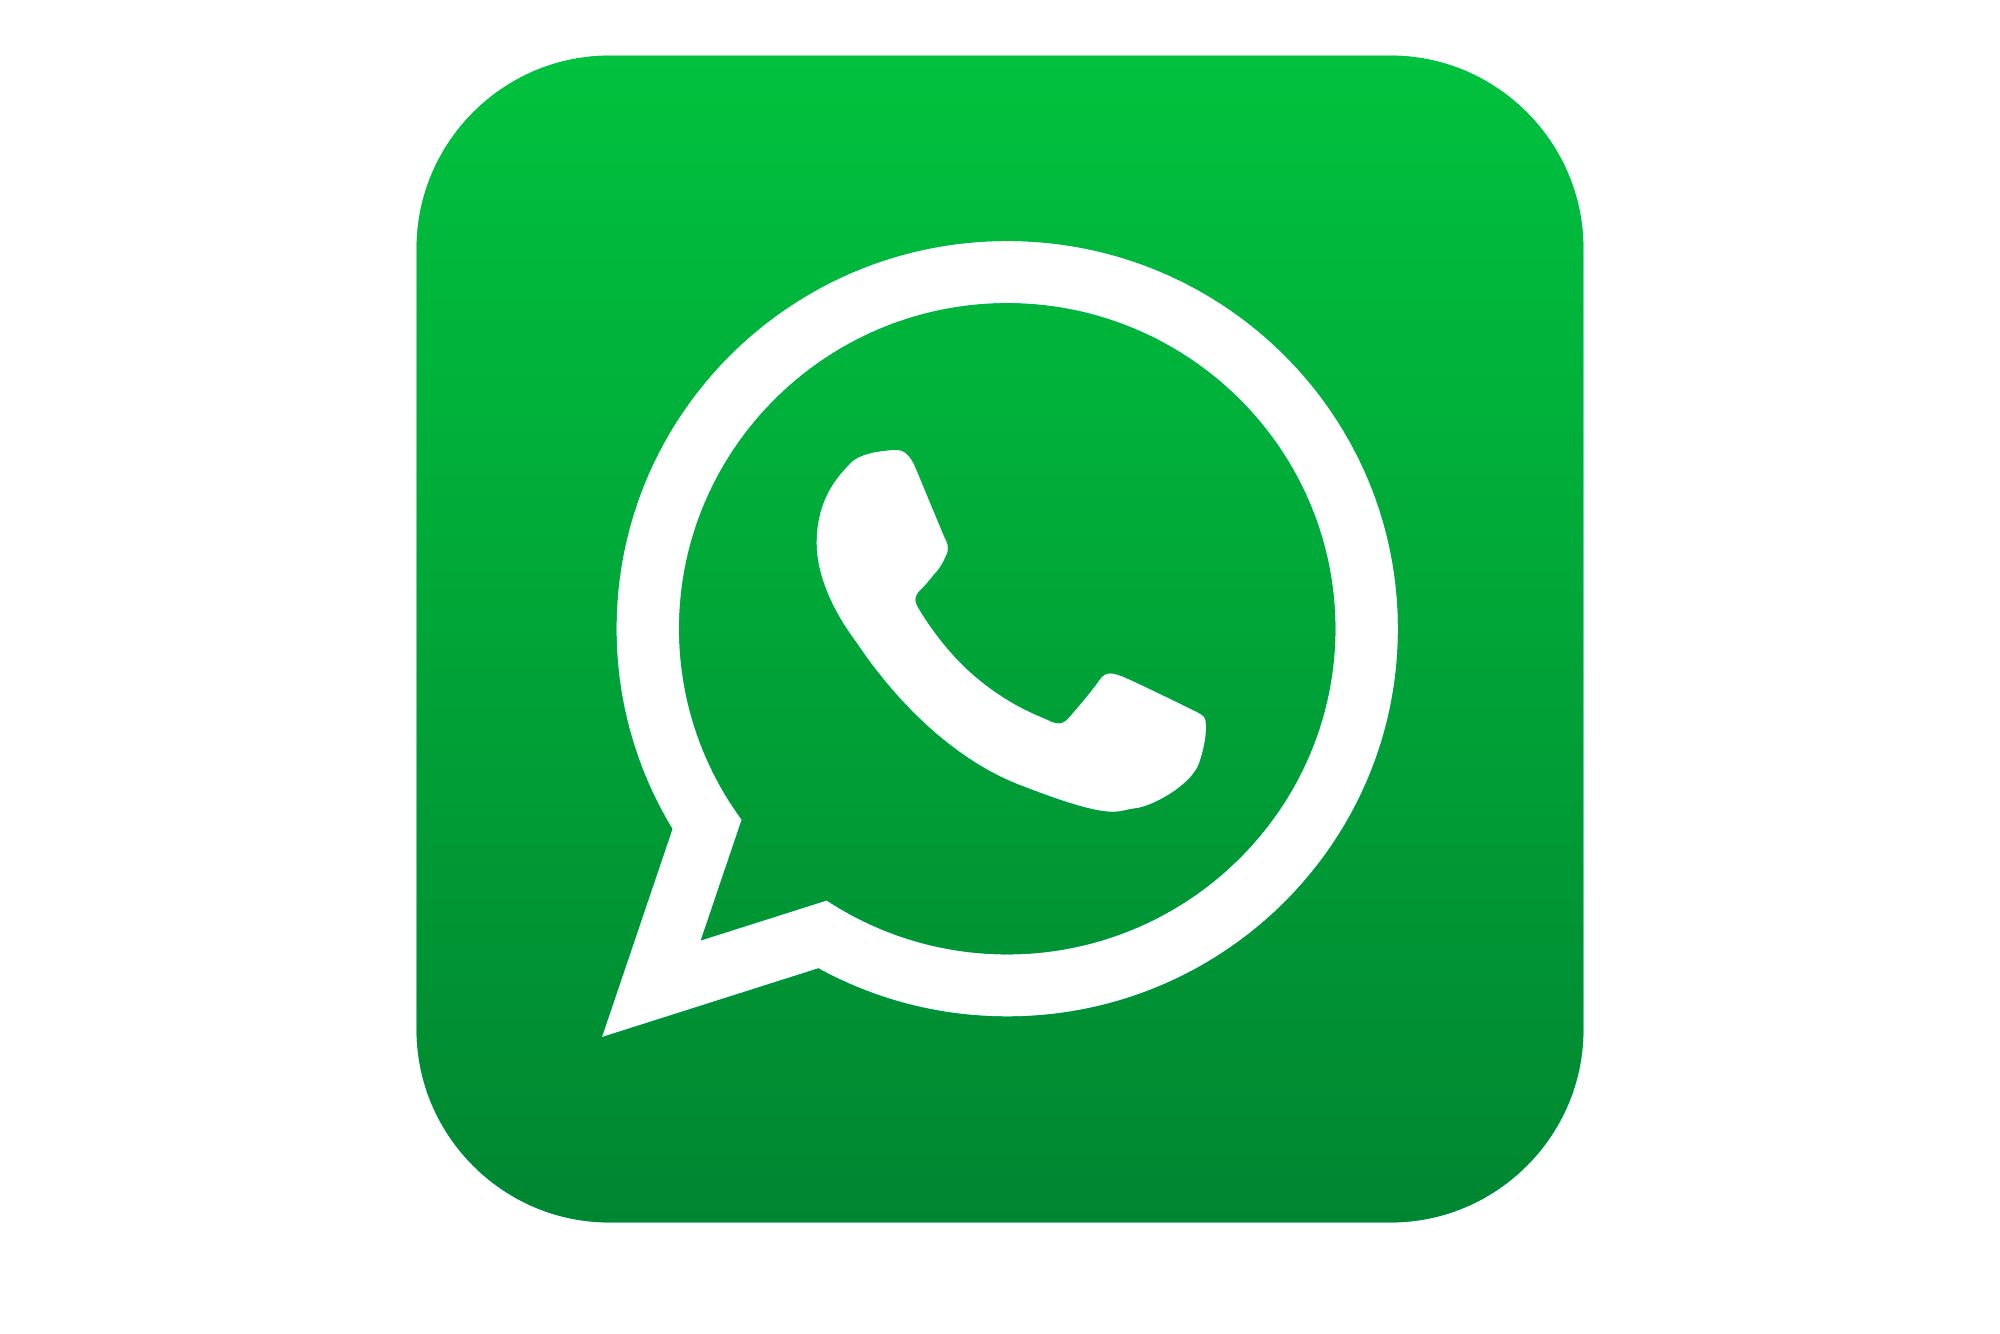 WhatsApp começa a liberar opção para acelerar mensagens de áudio